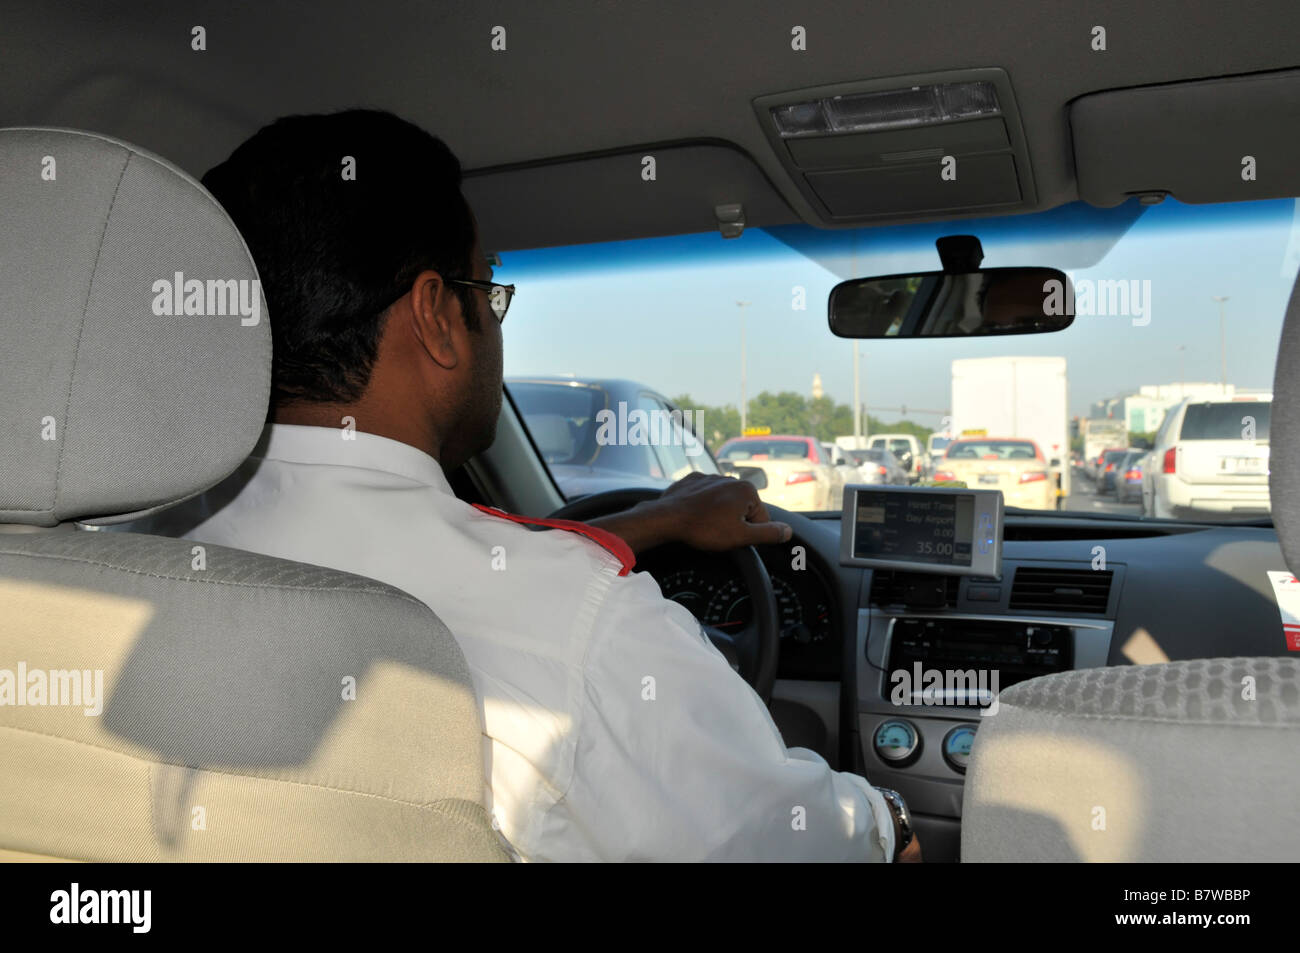 Innen Nahaufnahme Rückansicht Dubai Taxi Taxifahrer Hand am Lenkrad fährt auf viel befahrenen Straßen stecken in Stau Vereinigte Arabische Emirate VAE Stockfoto